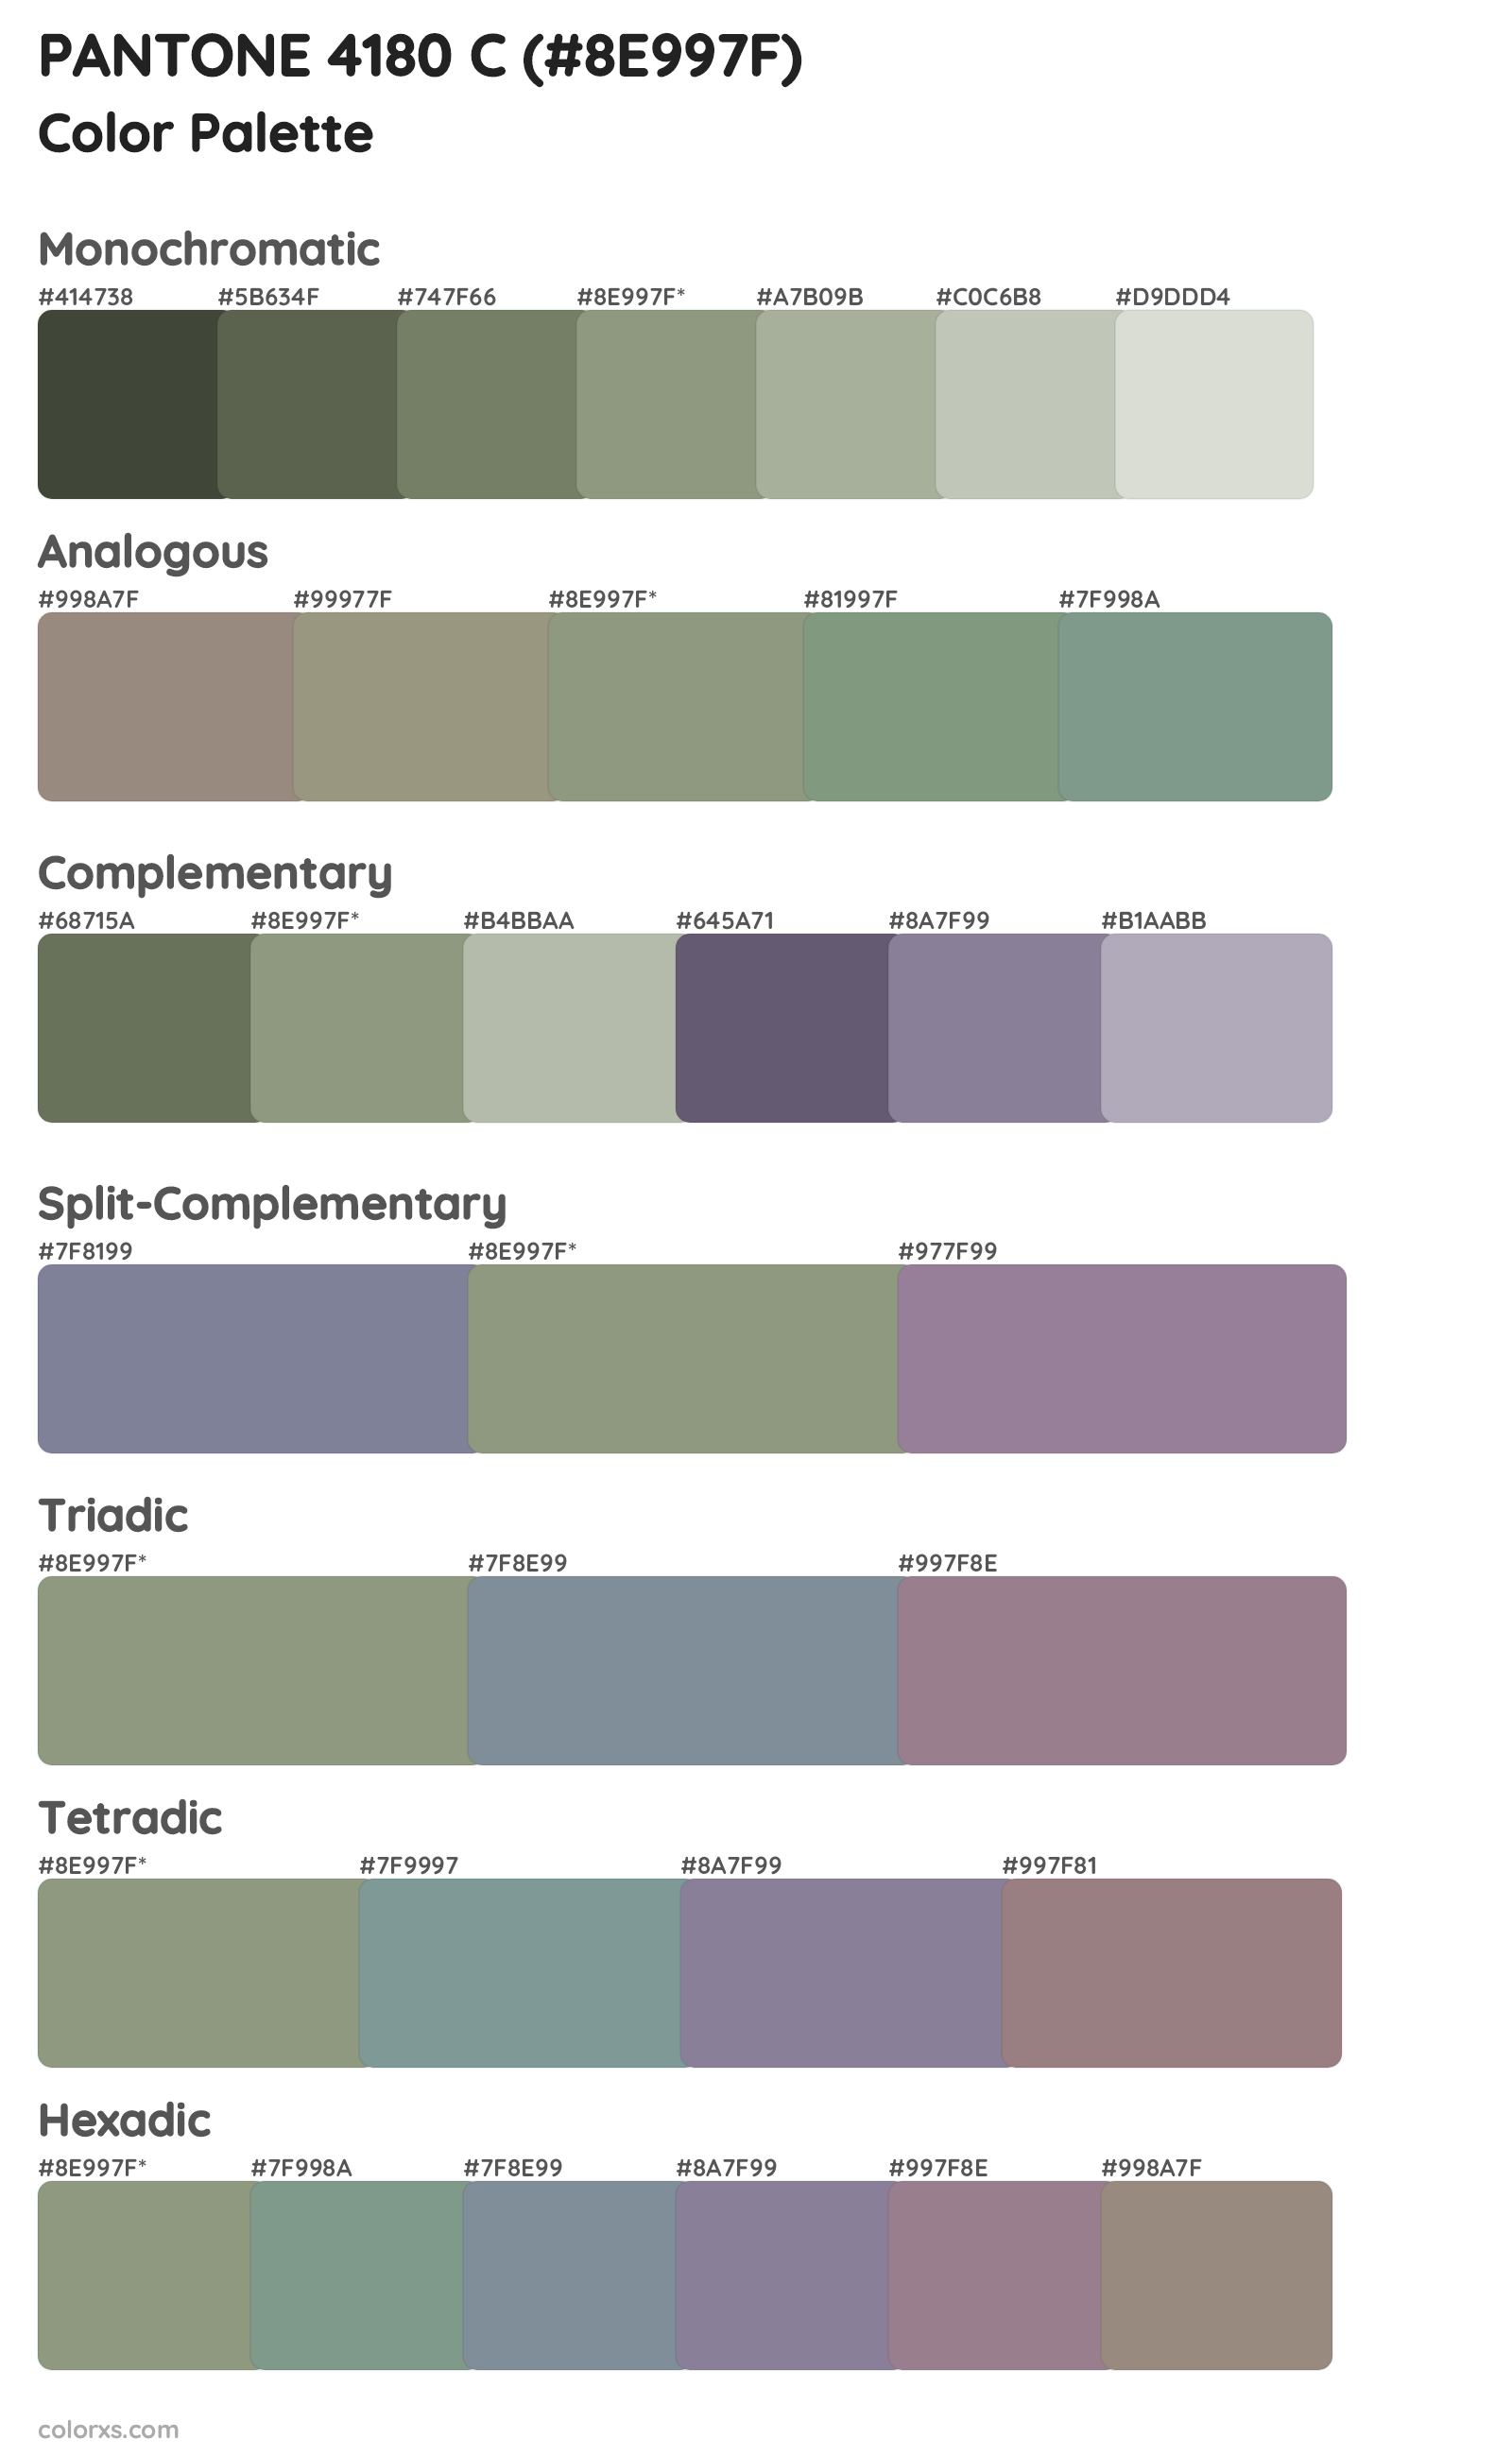 PANTONE 4180 C Color Scheme Palettes